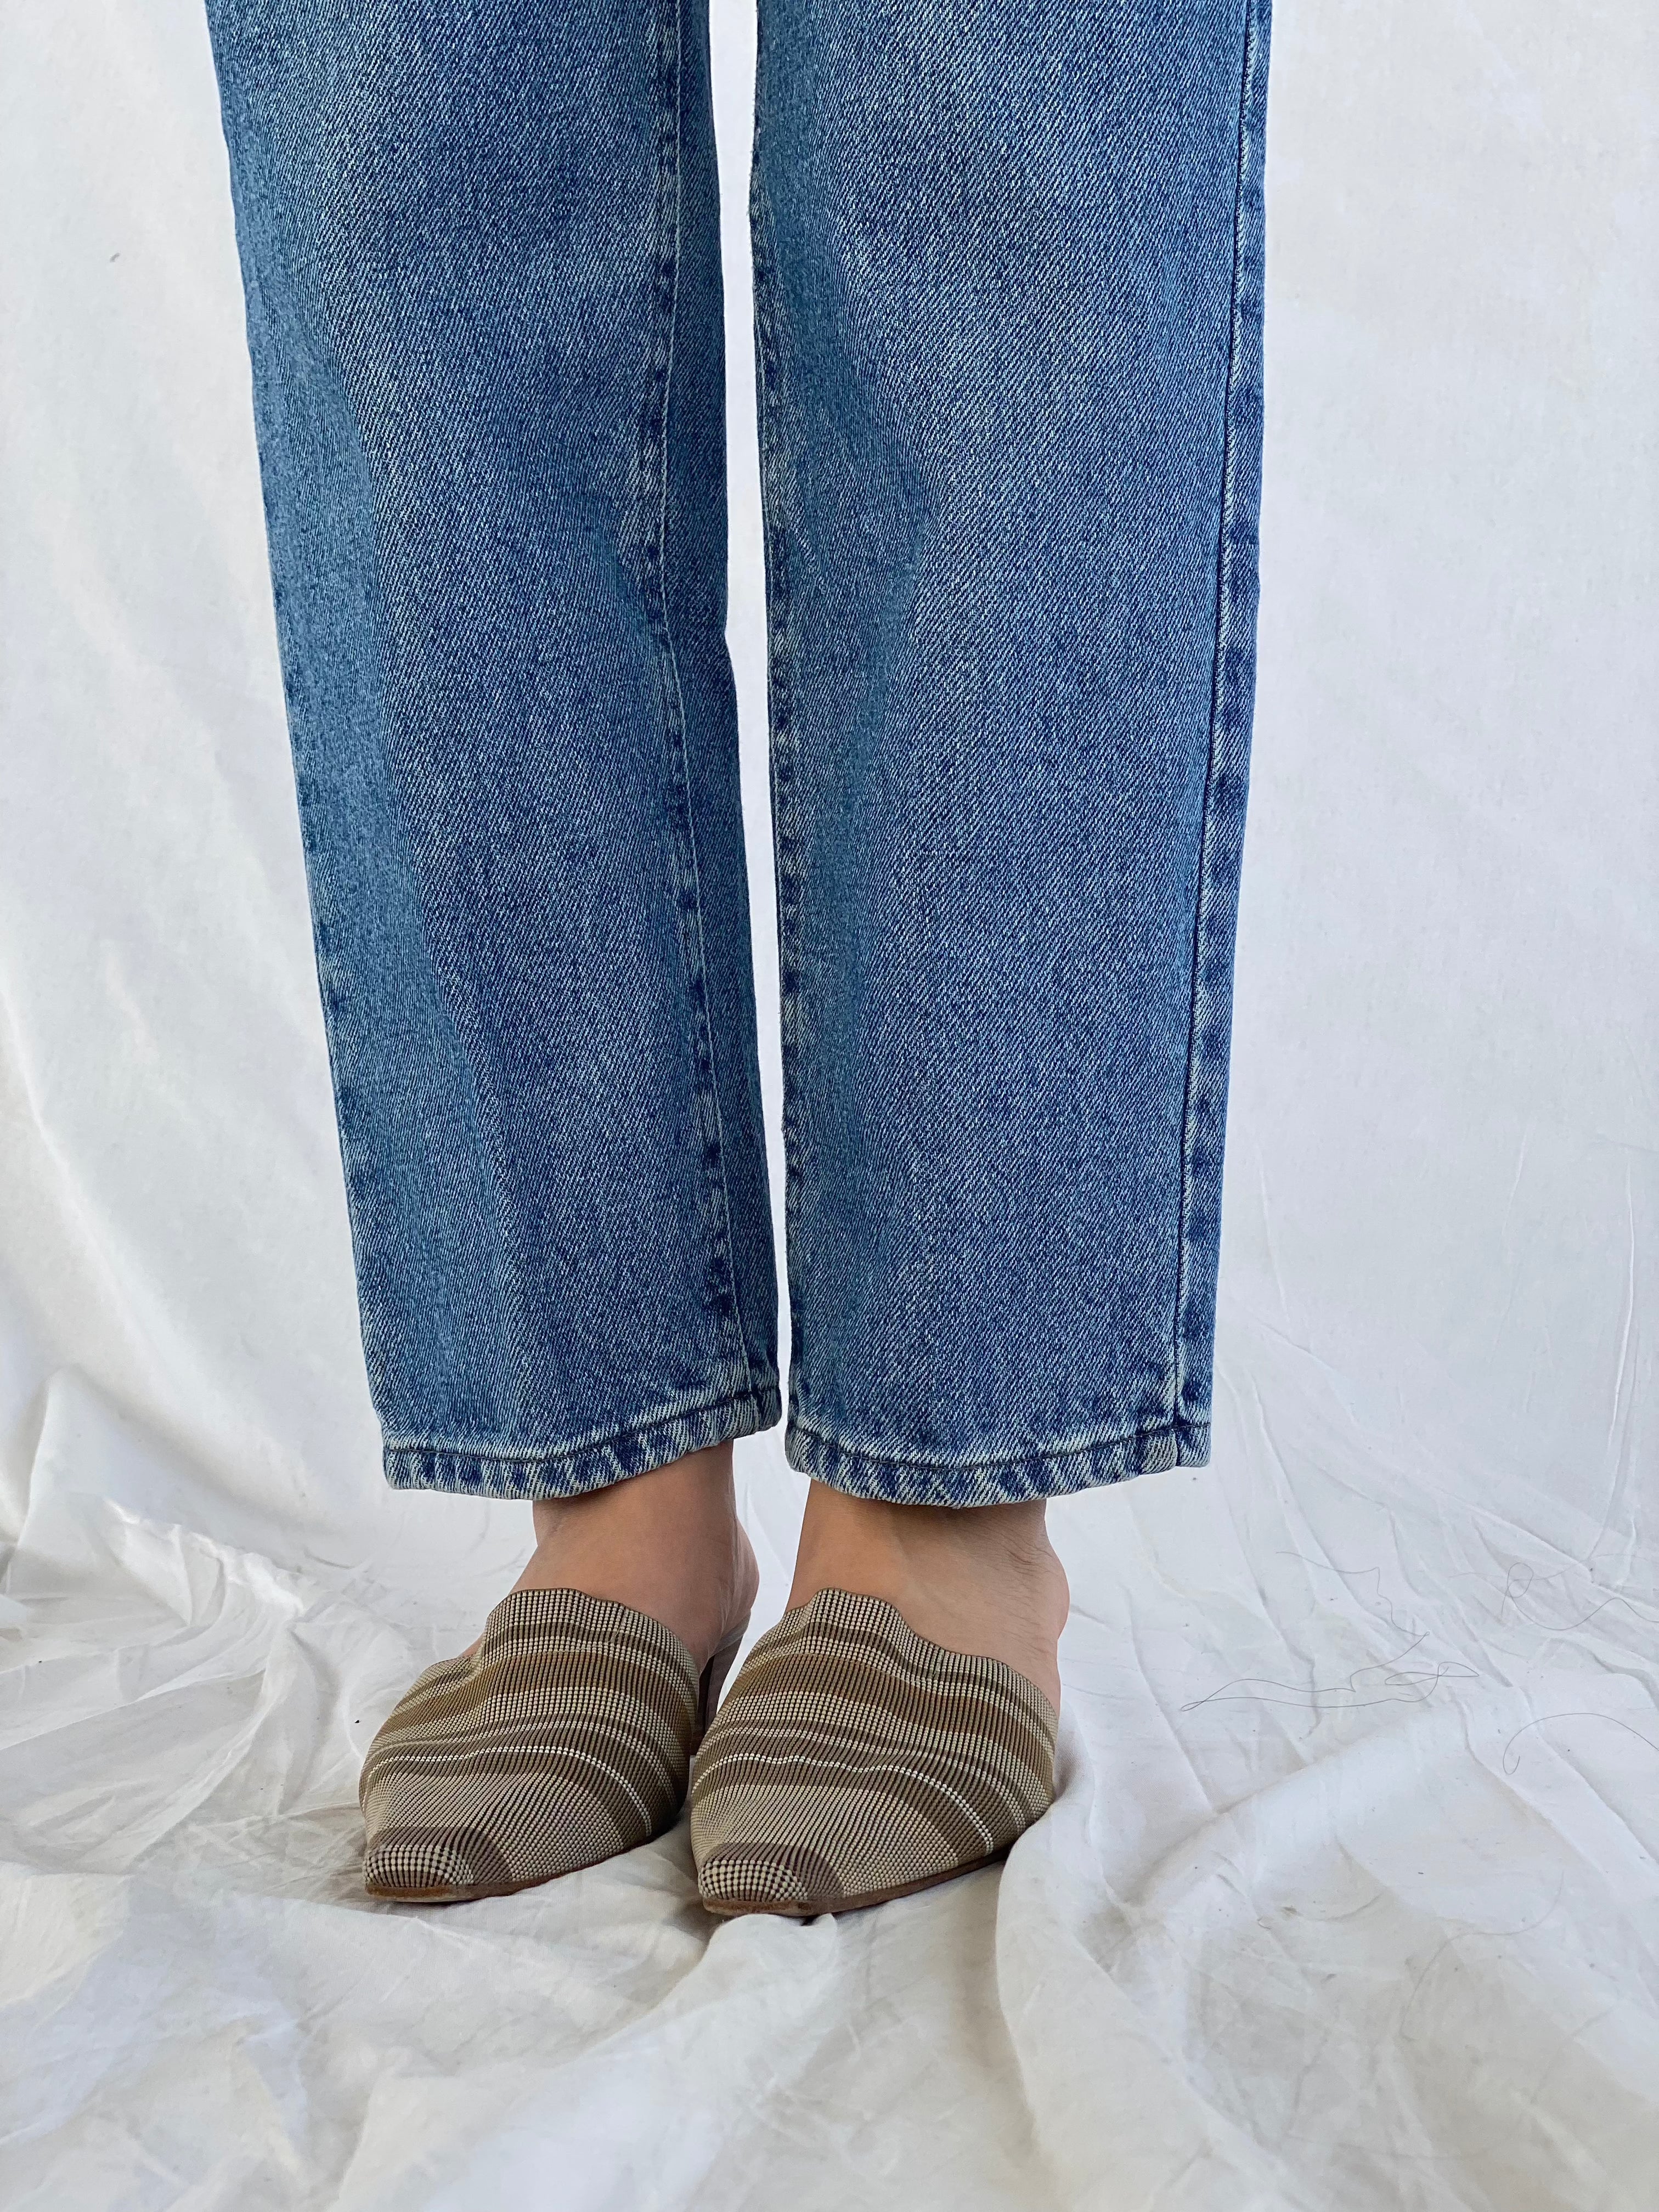 Vintage Lee Jeans - Balagan Vintage jeans, lee jeans, straight cut jeans, straightcut, vintage, vintage lee jeans